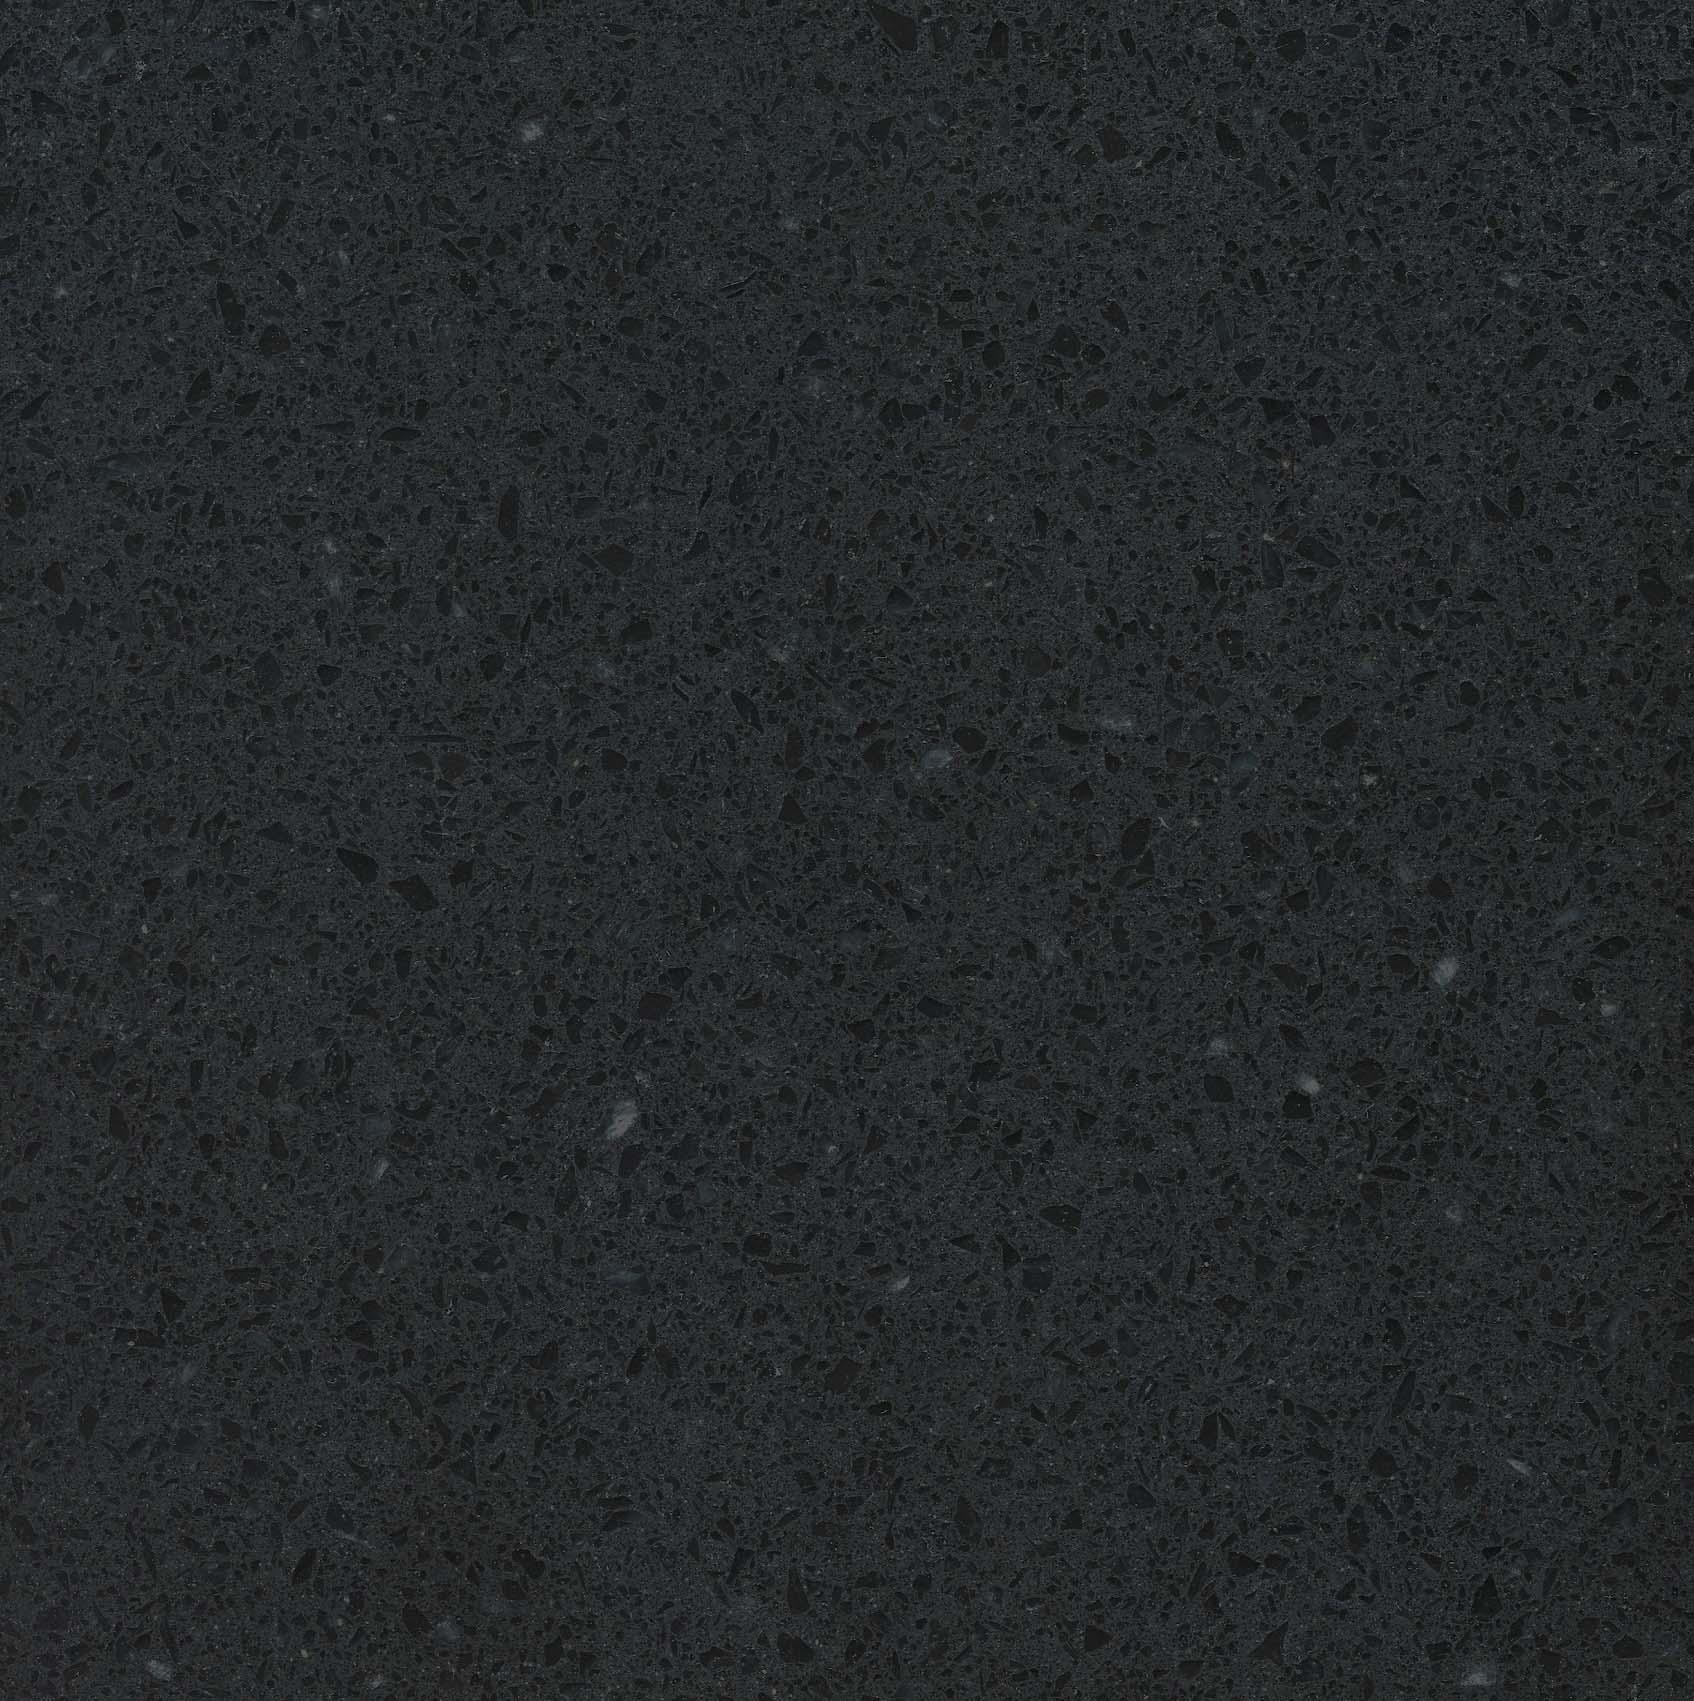 Искусственный камень текстура бесшовная столешница